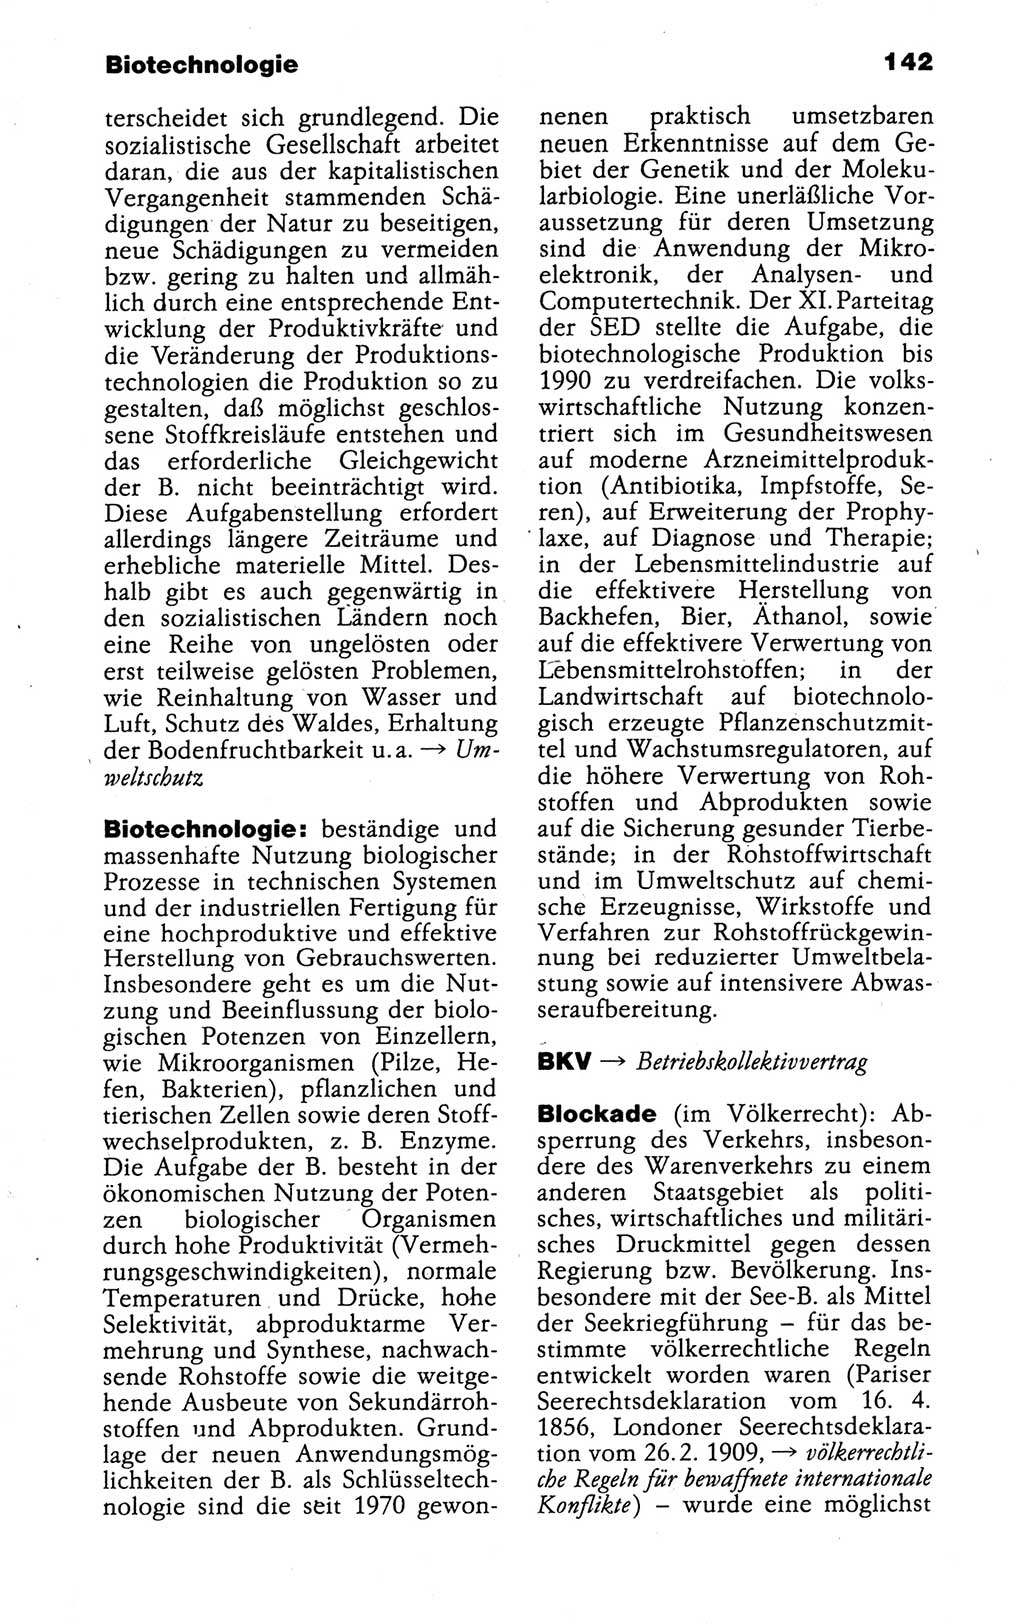 Kleines politisches Wörterbuch [Deutsche Demokratische Republik (DDR)] 1988, Seite 142 (Kl. pol. Wb. DDR 1988, S. 142)